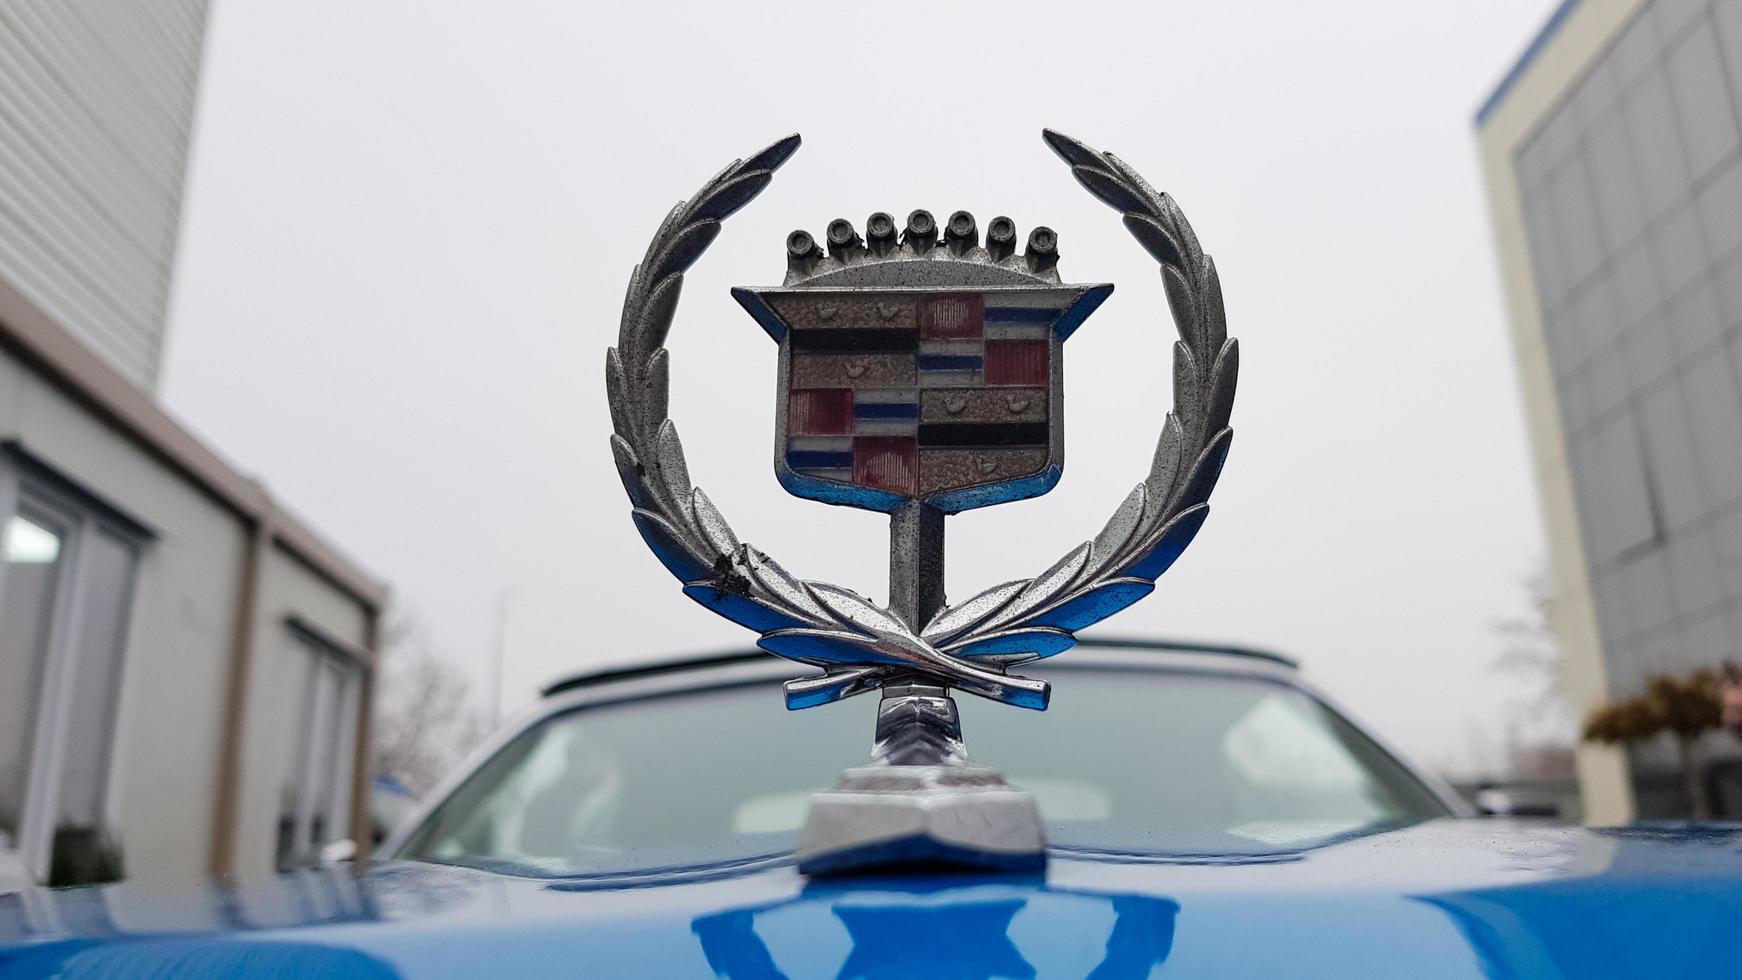 ucraina, kiev - 27 marzo 2020. auto classica retrò vintage cadillac beatriz di colore blu. stemma sul cappuccio con logo. parti originali dell'auto americana restaurata. foto da diverse angolazioni.